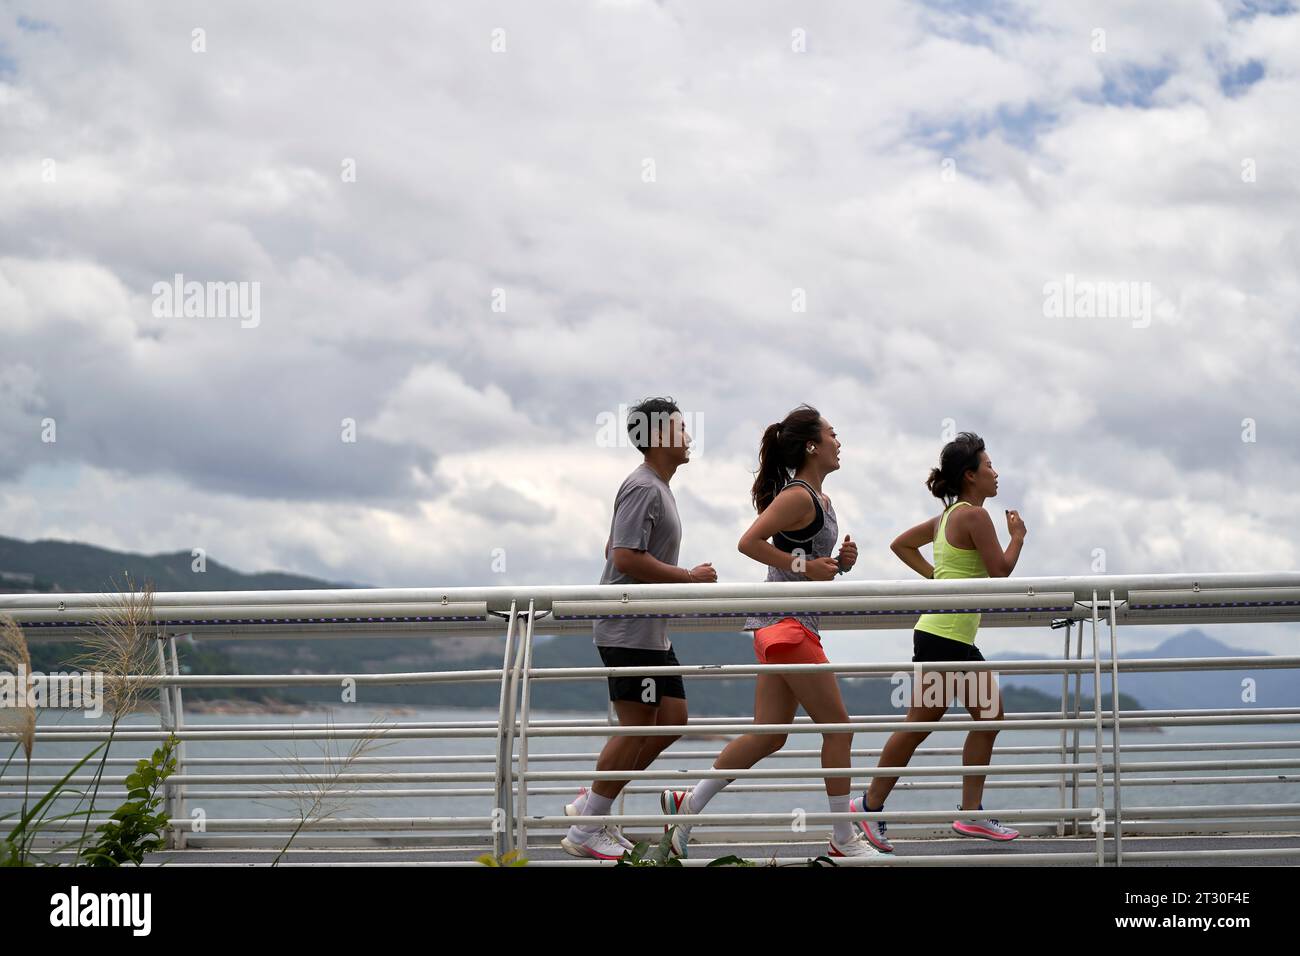 trois jeunes joggeurs adultes asiatiques s'exerçant à l'extérieur dans le parc au bord de la mer Banque D'Images